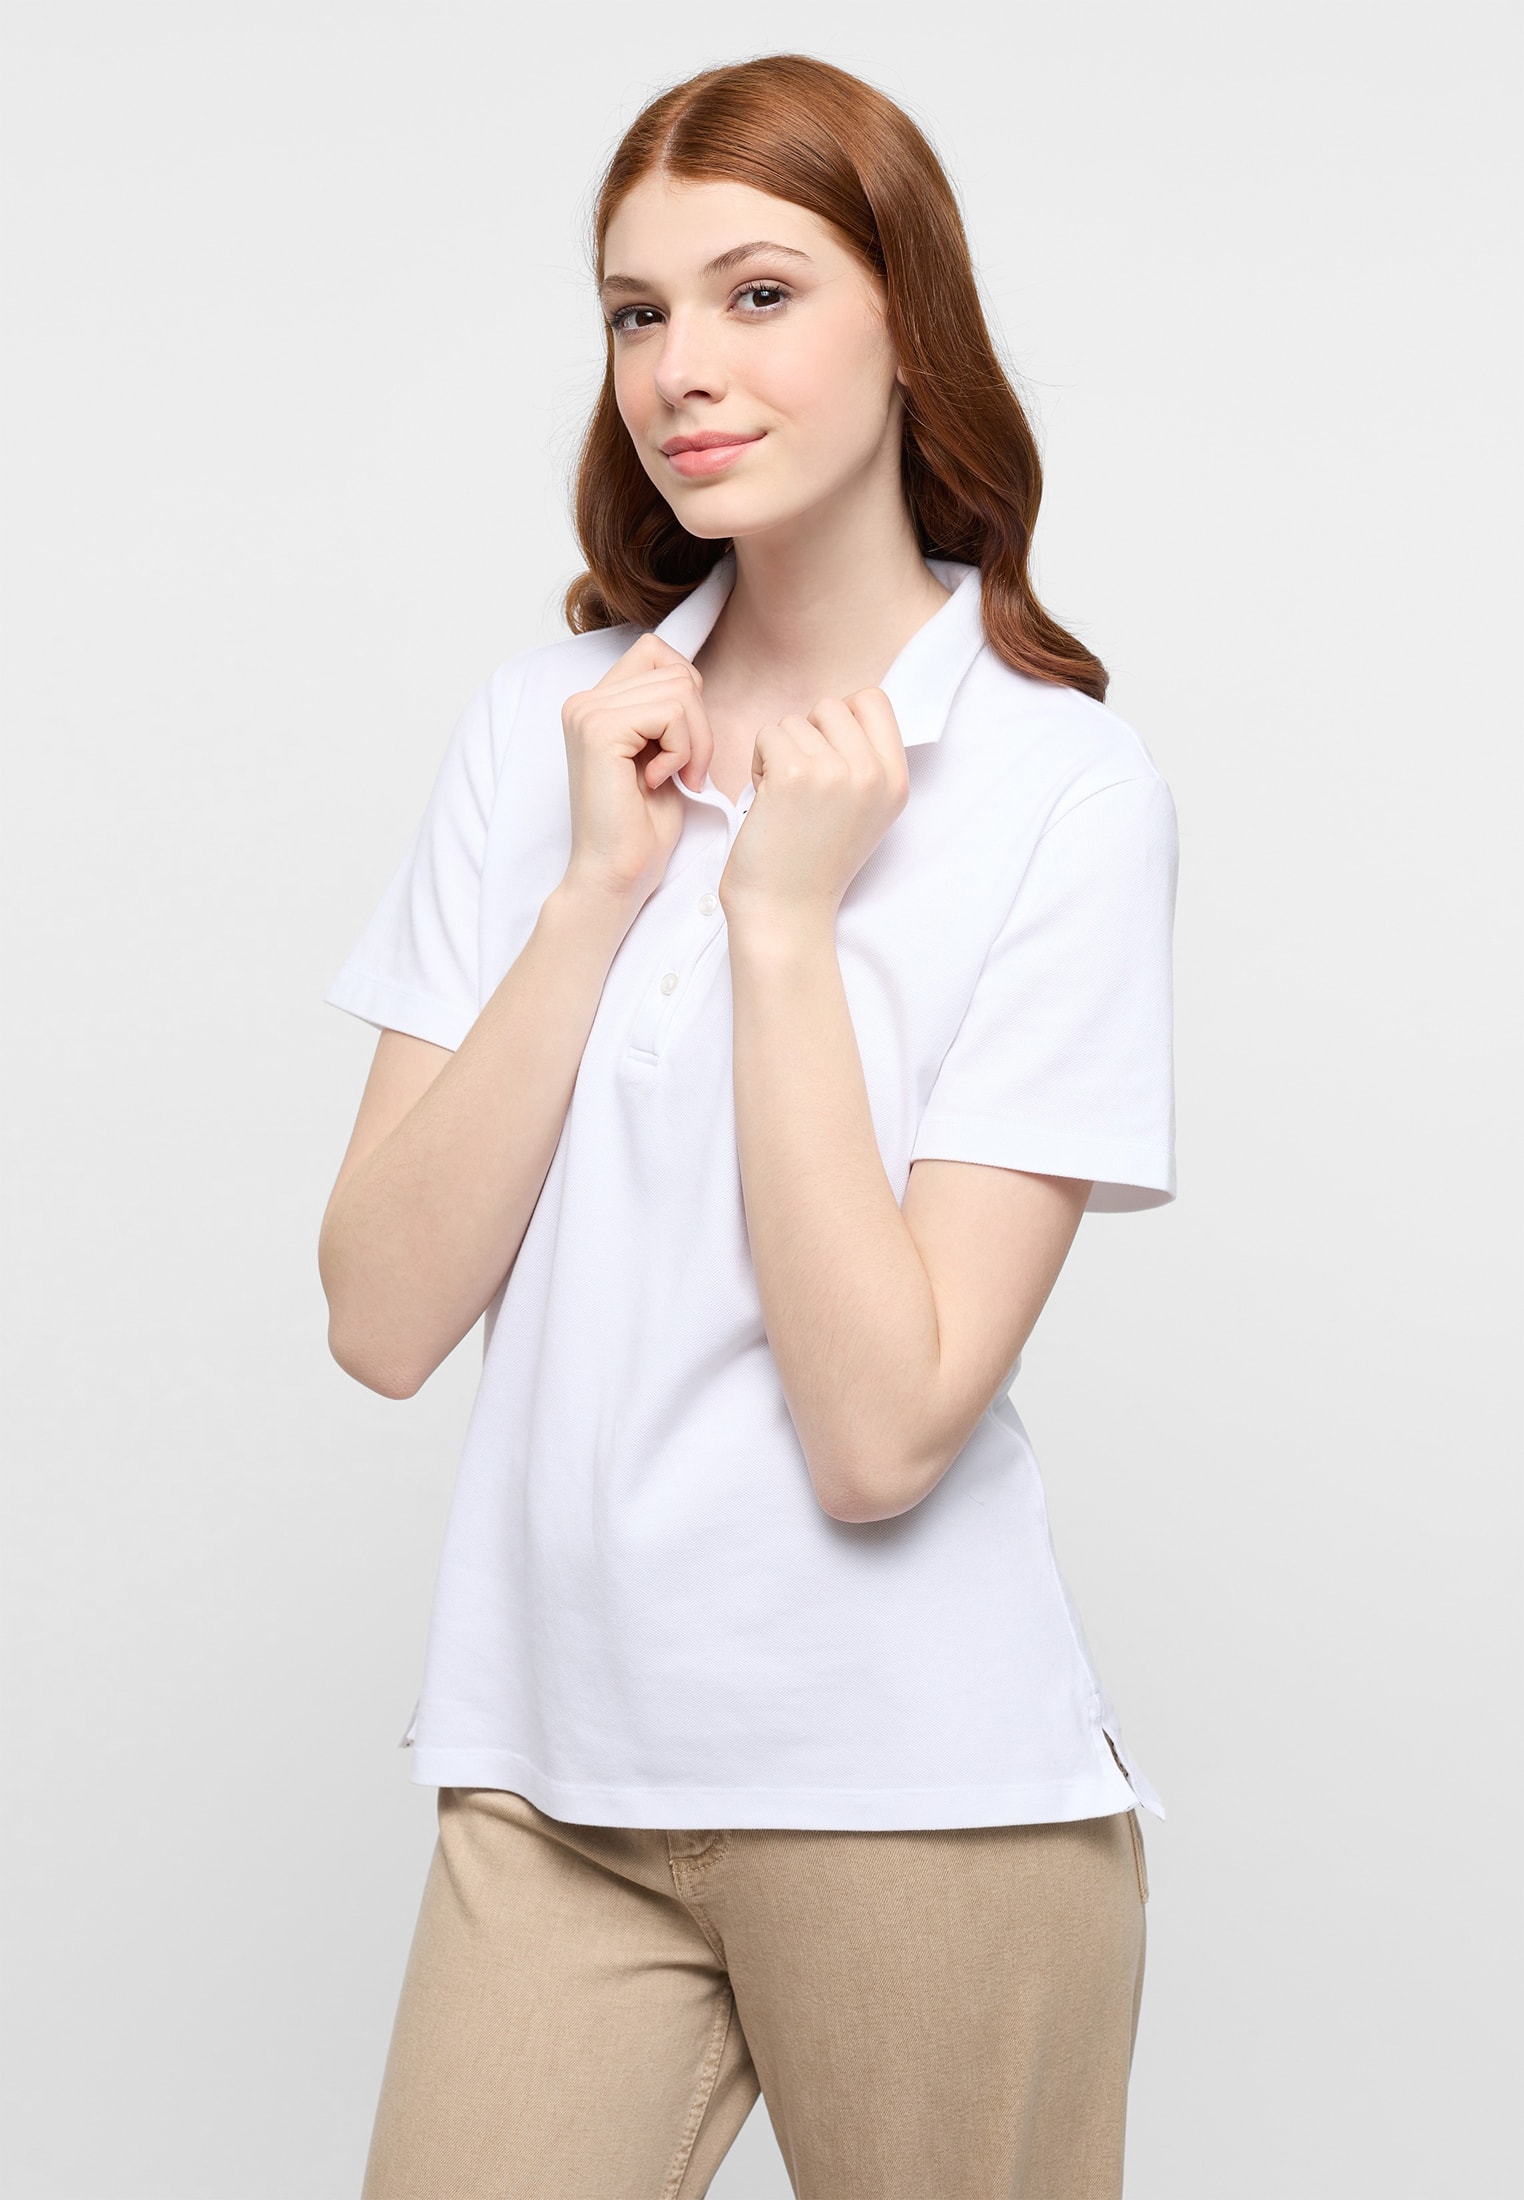 Poloshirt in weiß unifarben